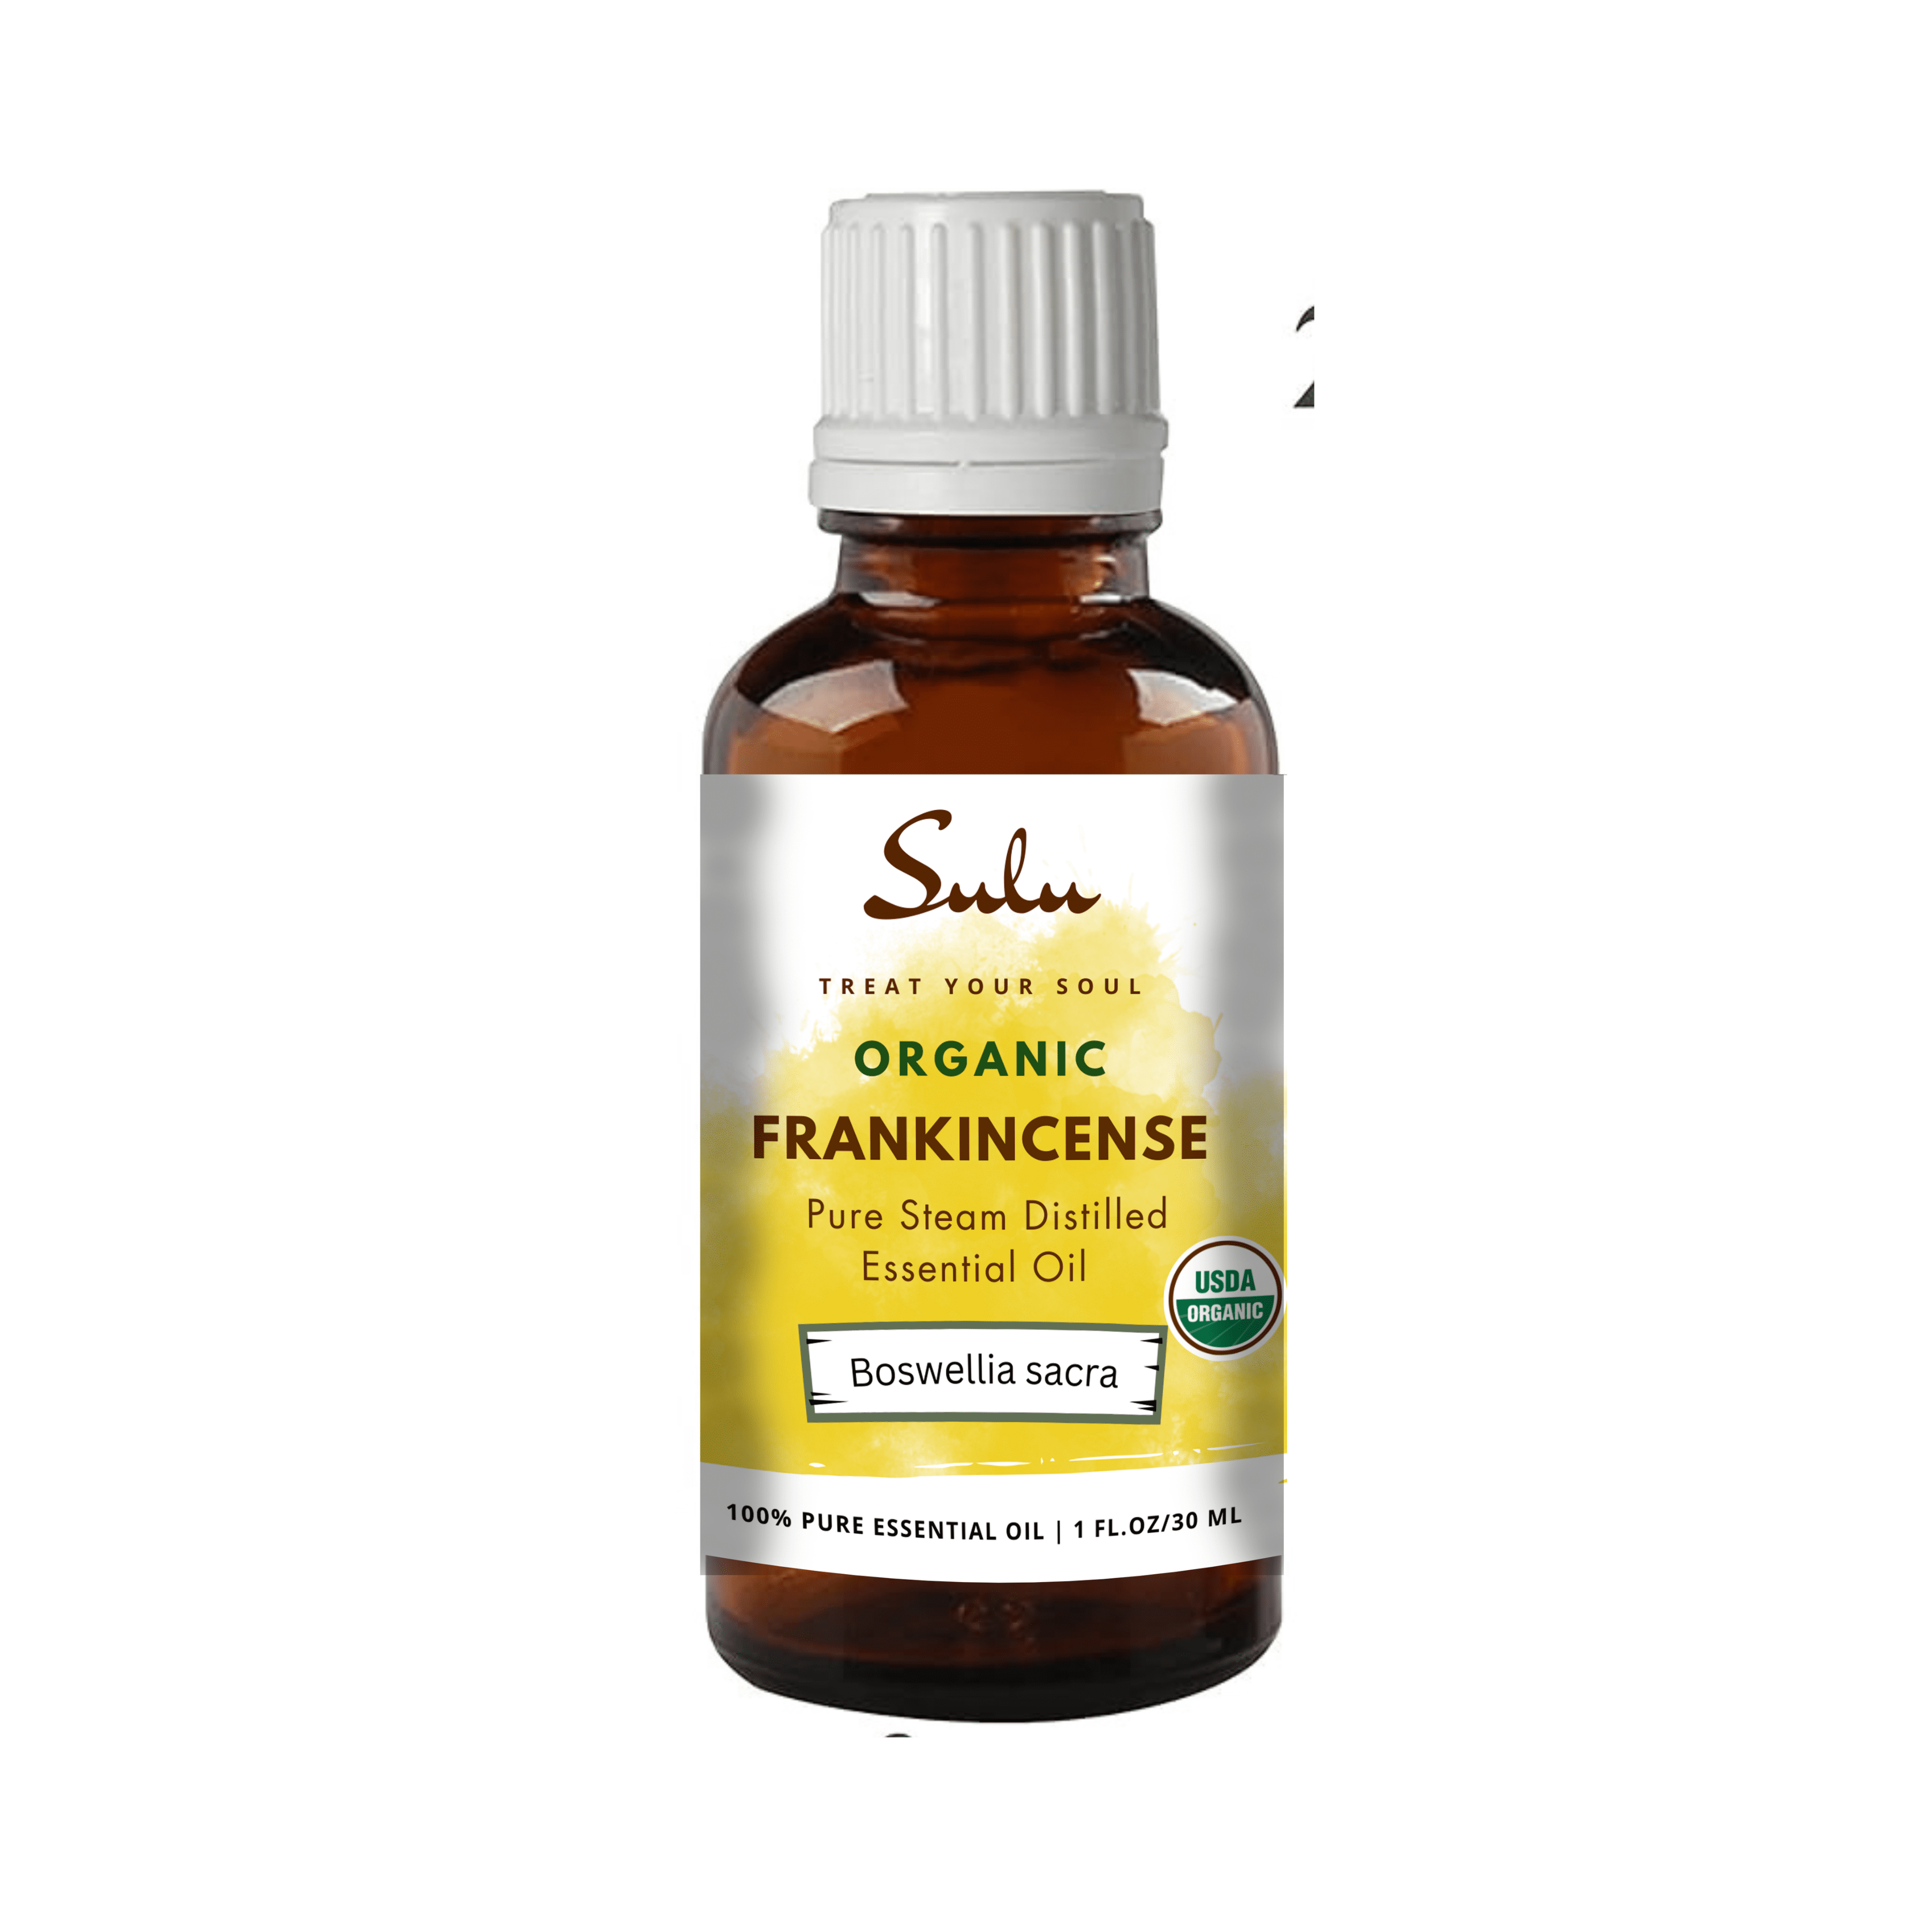 Cliganic USDA Organic Frankincense Essential Oil - Boswellia Serrata, 100% Pure